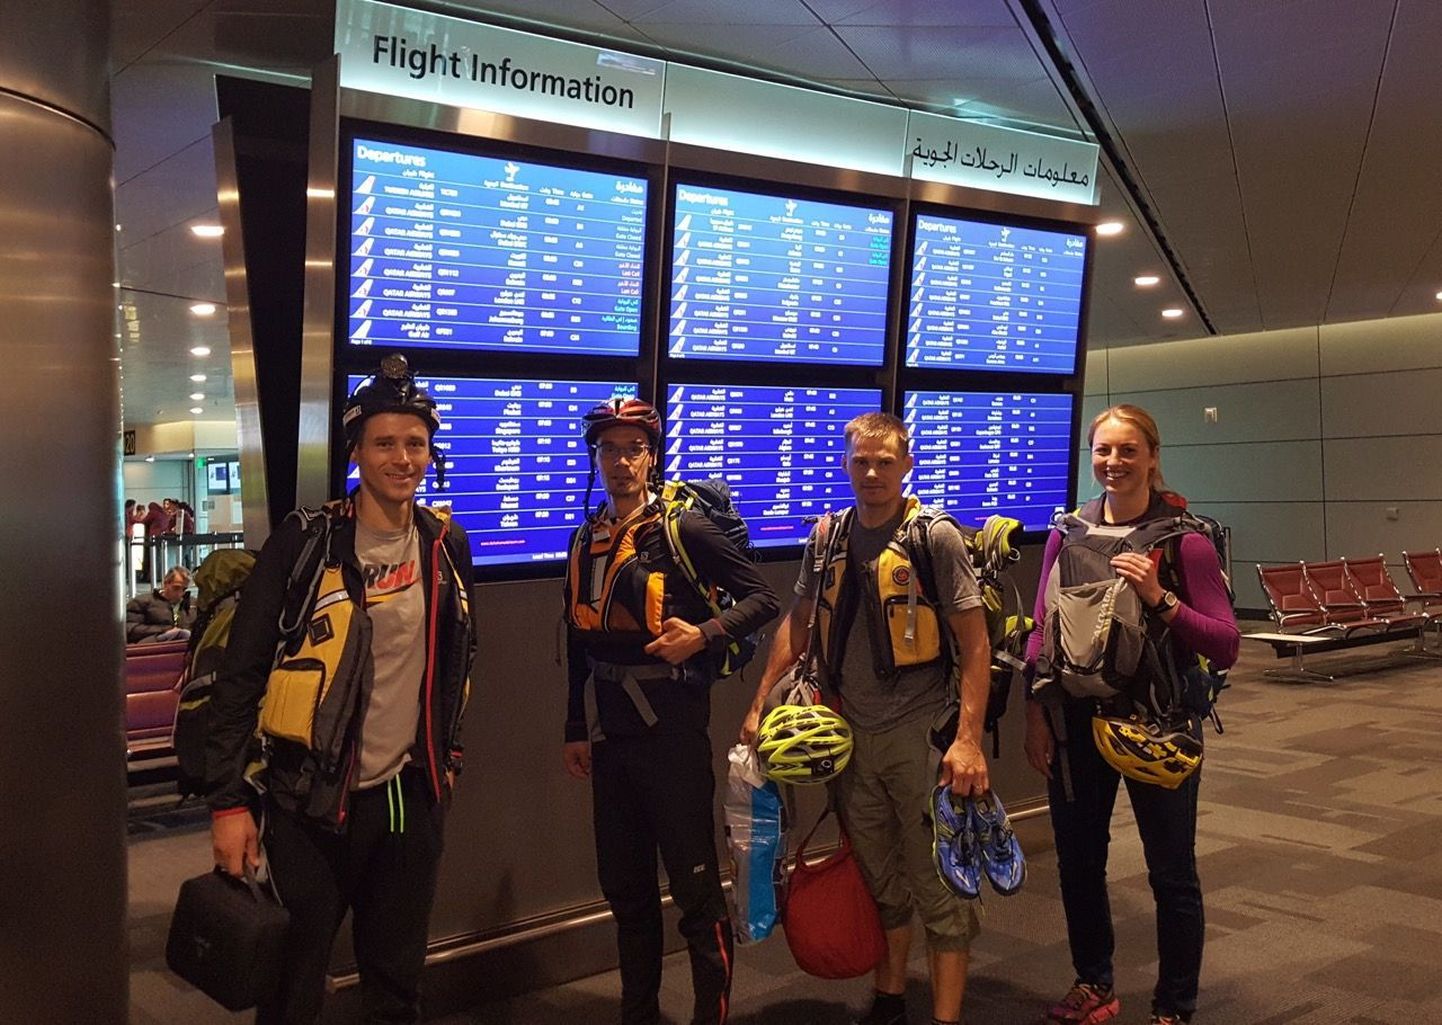 Estonian ACE Adventure Team (vasakult) Silver Eensaar, Timmo Tammemäe, Rain Eensaar ja Mariann Sulg ootamas oma kiivrite, päästevestide ja seljakottidega Kataris Doha lennujaamas edasilendu Lõuna-Aafrika Vabariiki Johannesburgi.